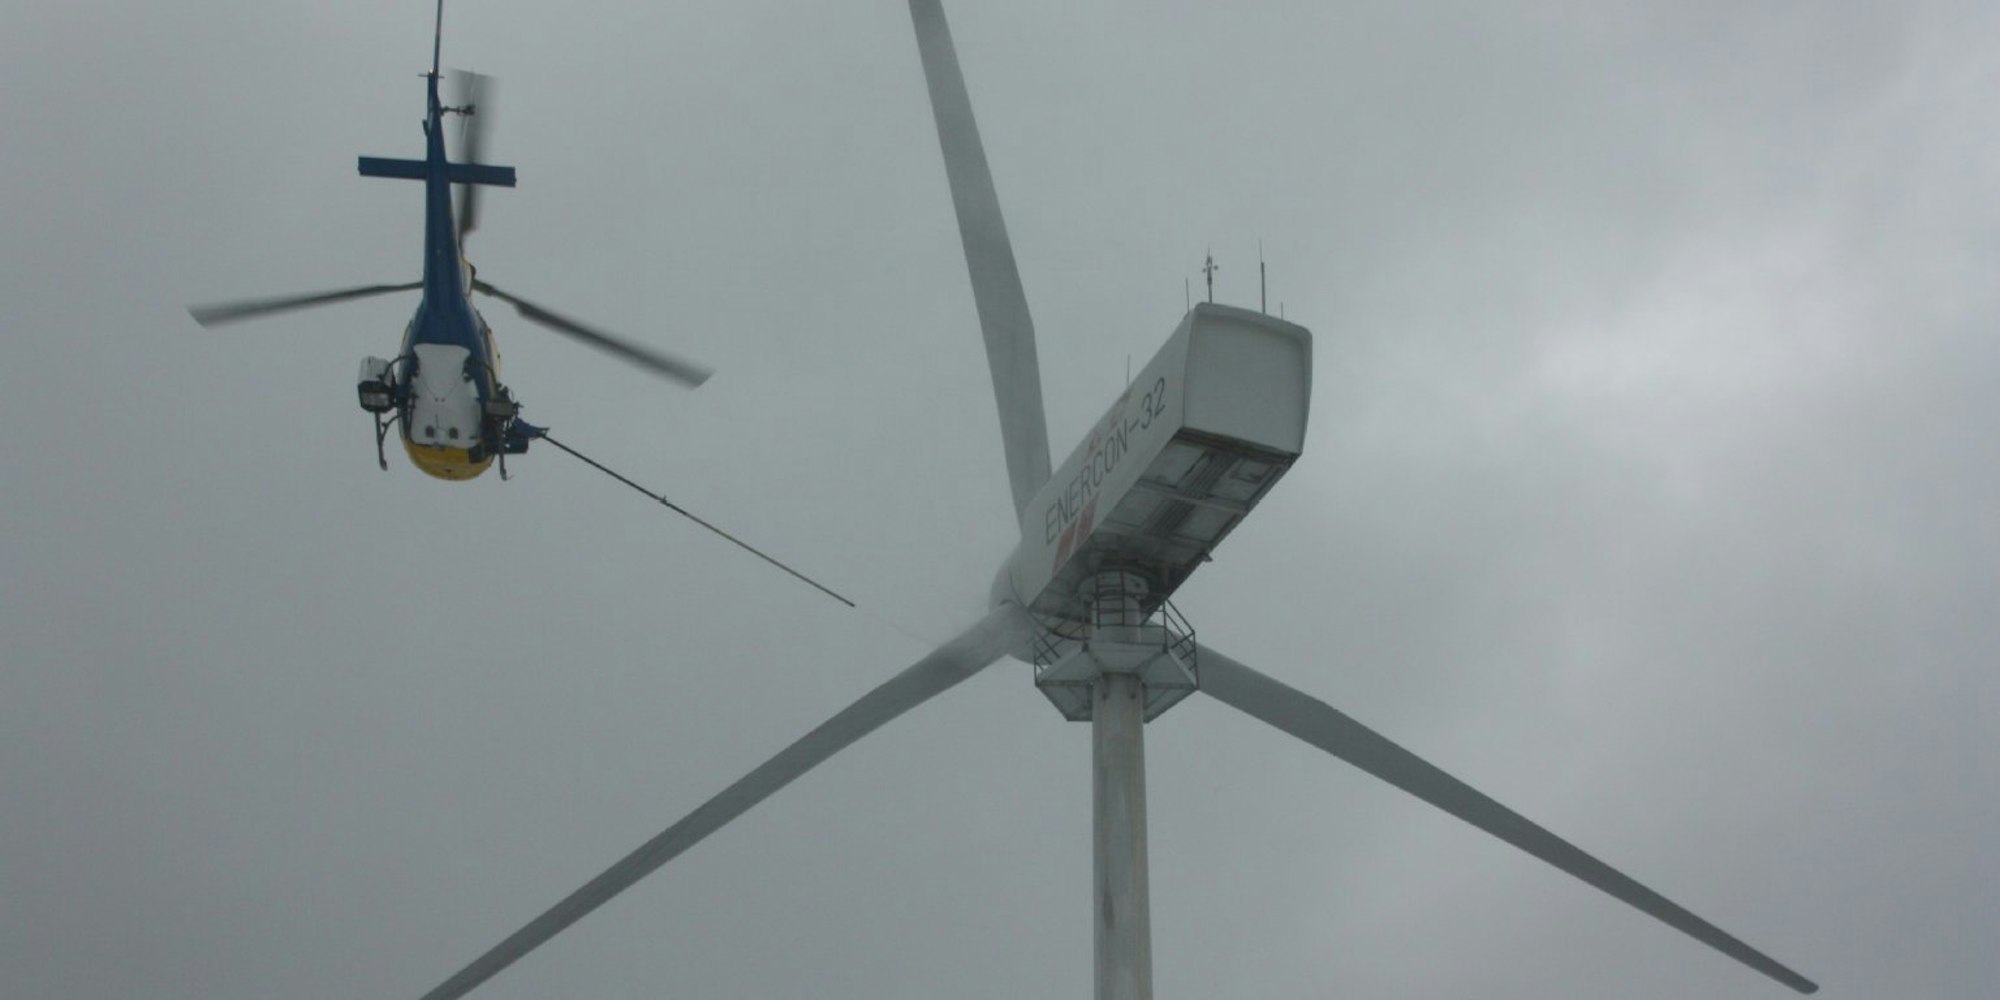 Rund eine Stunde braucht die Zwei-Mann-Besatzung des Helikopters, um die drei Rotorblätter und die Kanzel eines Windrades per Hochdruckreiniger zu säubern.